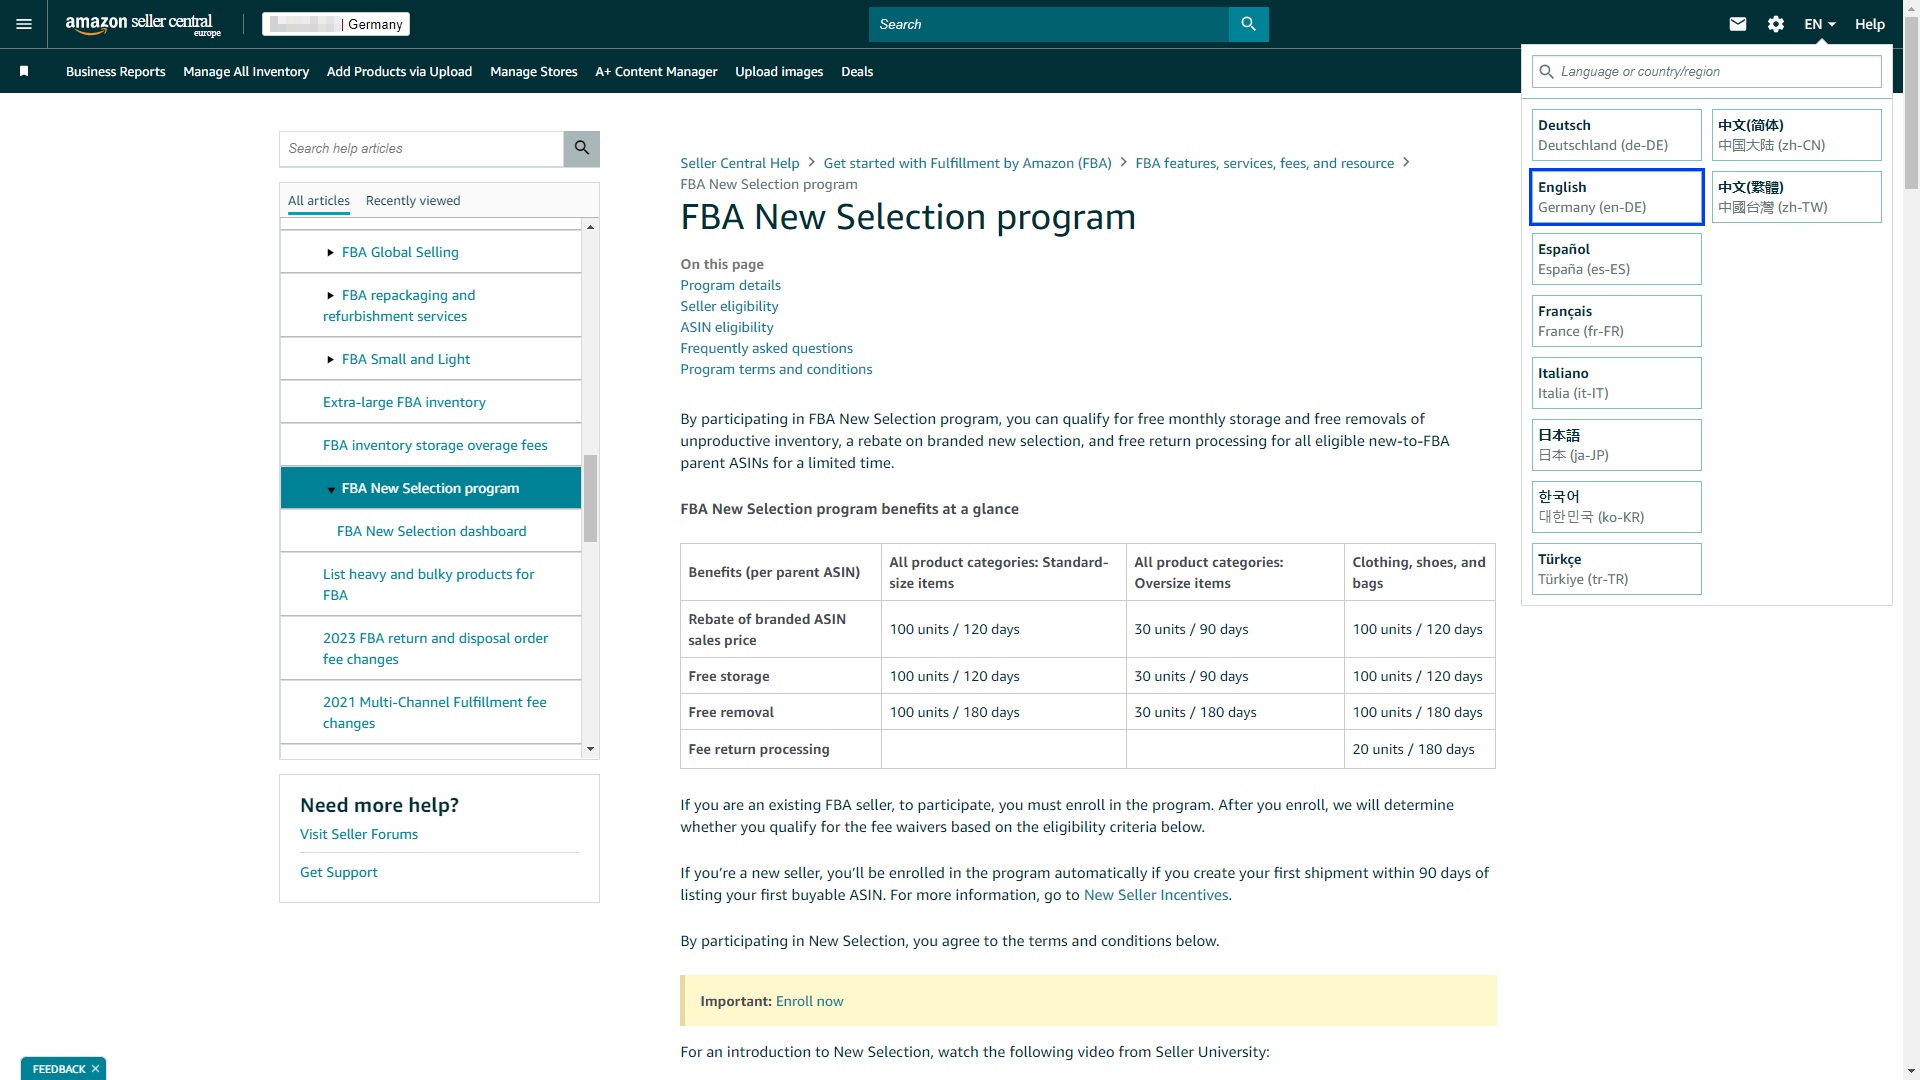 Der Screenshot zeigt den Hilfe-Artikel zum FBA New Selection Programm im Amazon Seller Central. Mit diesem können FBA Seller innerhalb eines bestimmten Zeitraums die FBA Gebühren für eine bestimmte Anzahl von Einheiten neuer Produkte sparen.